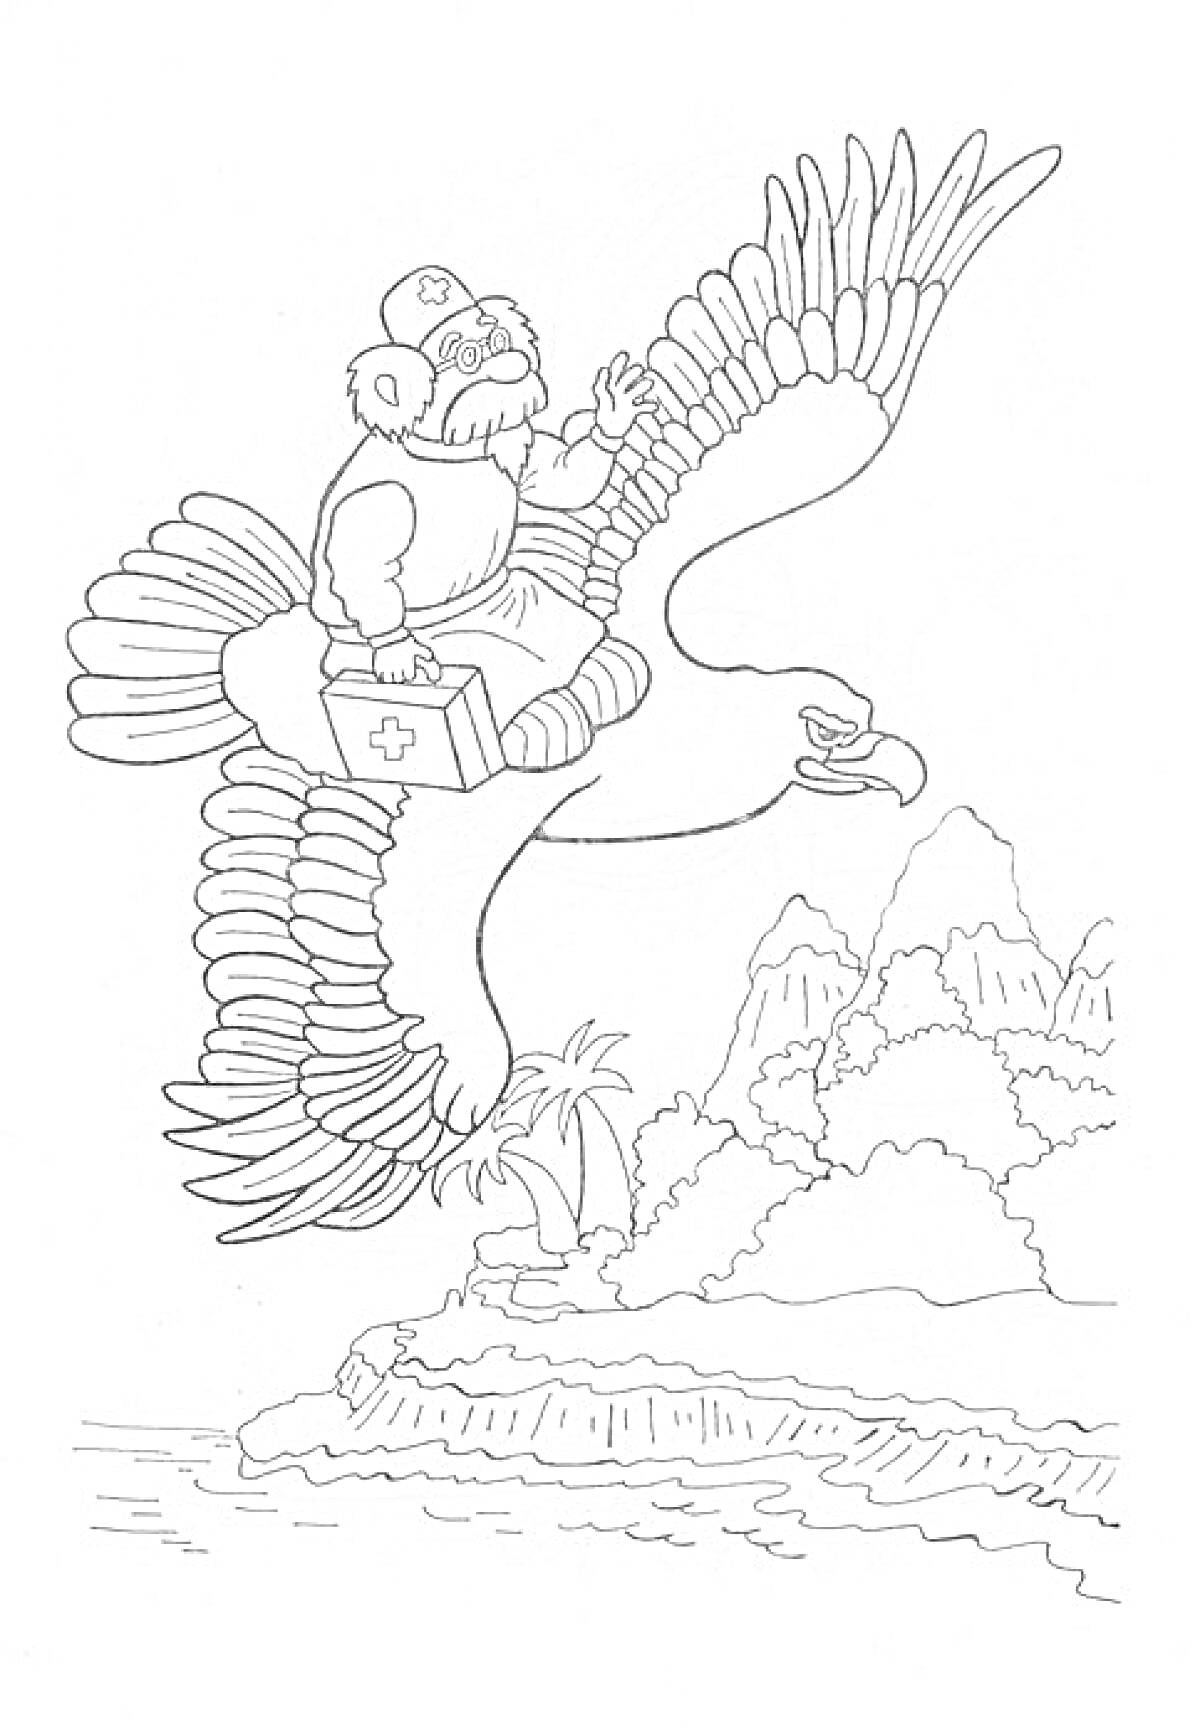 Орел с медиком, держащим аптечку, летящий над островом с пальмой и горами